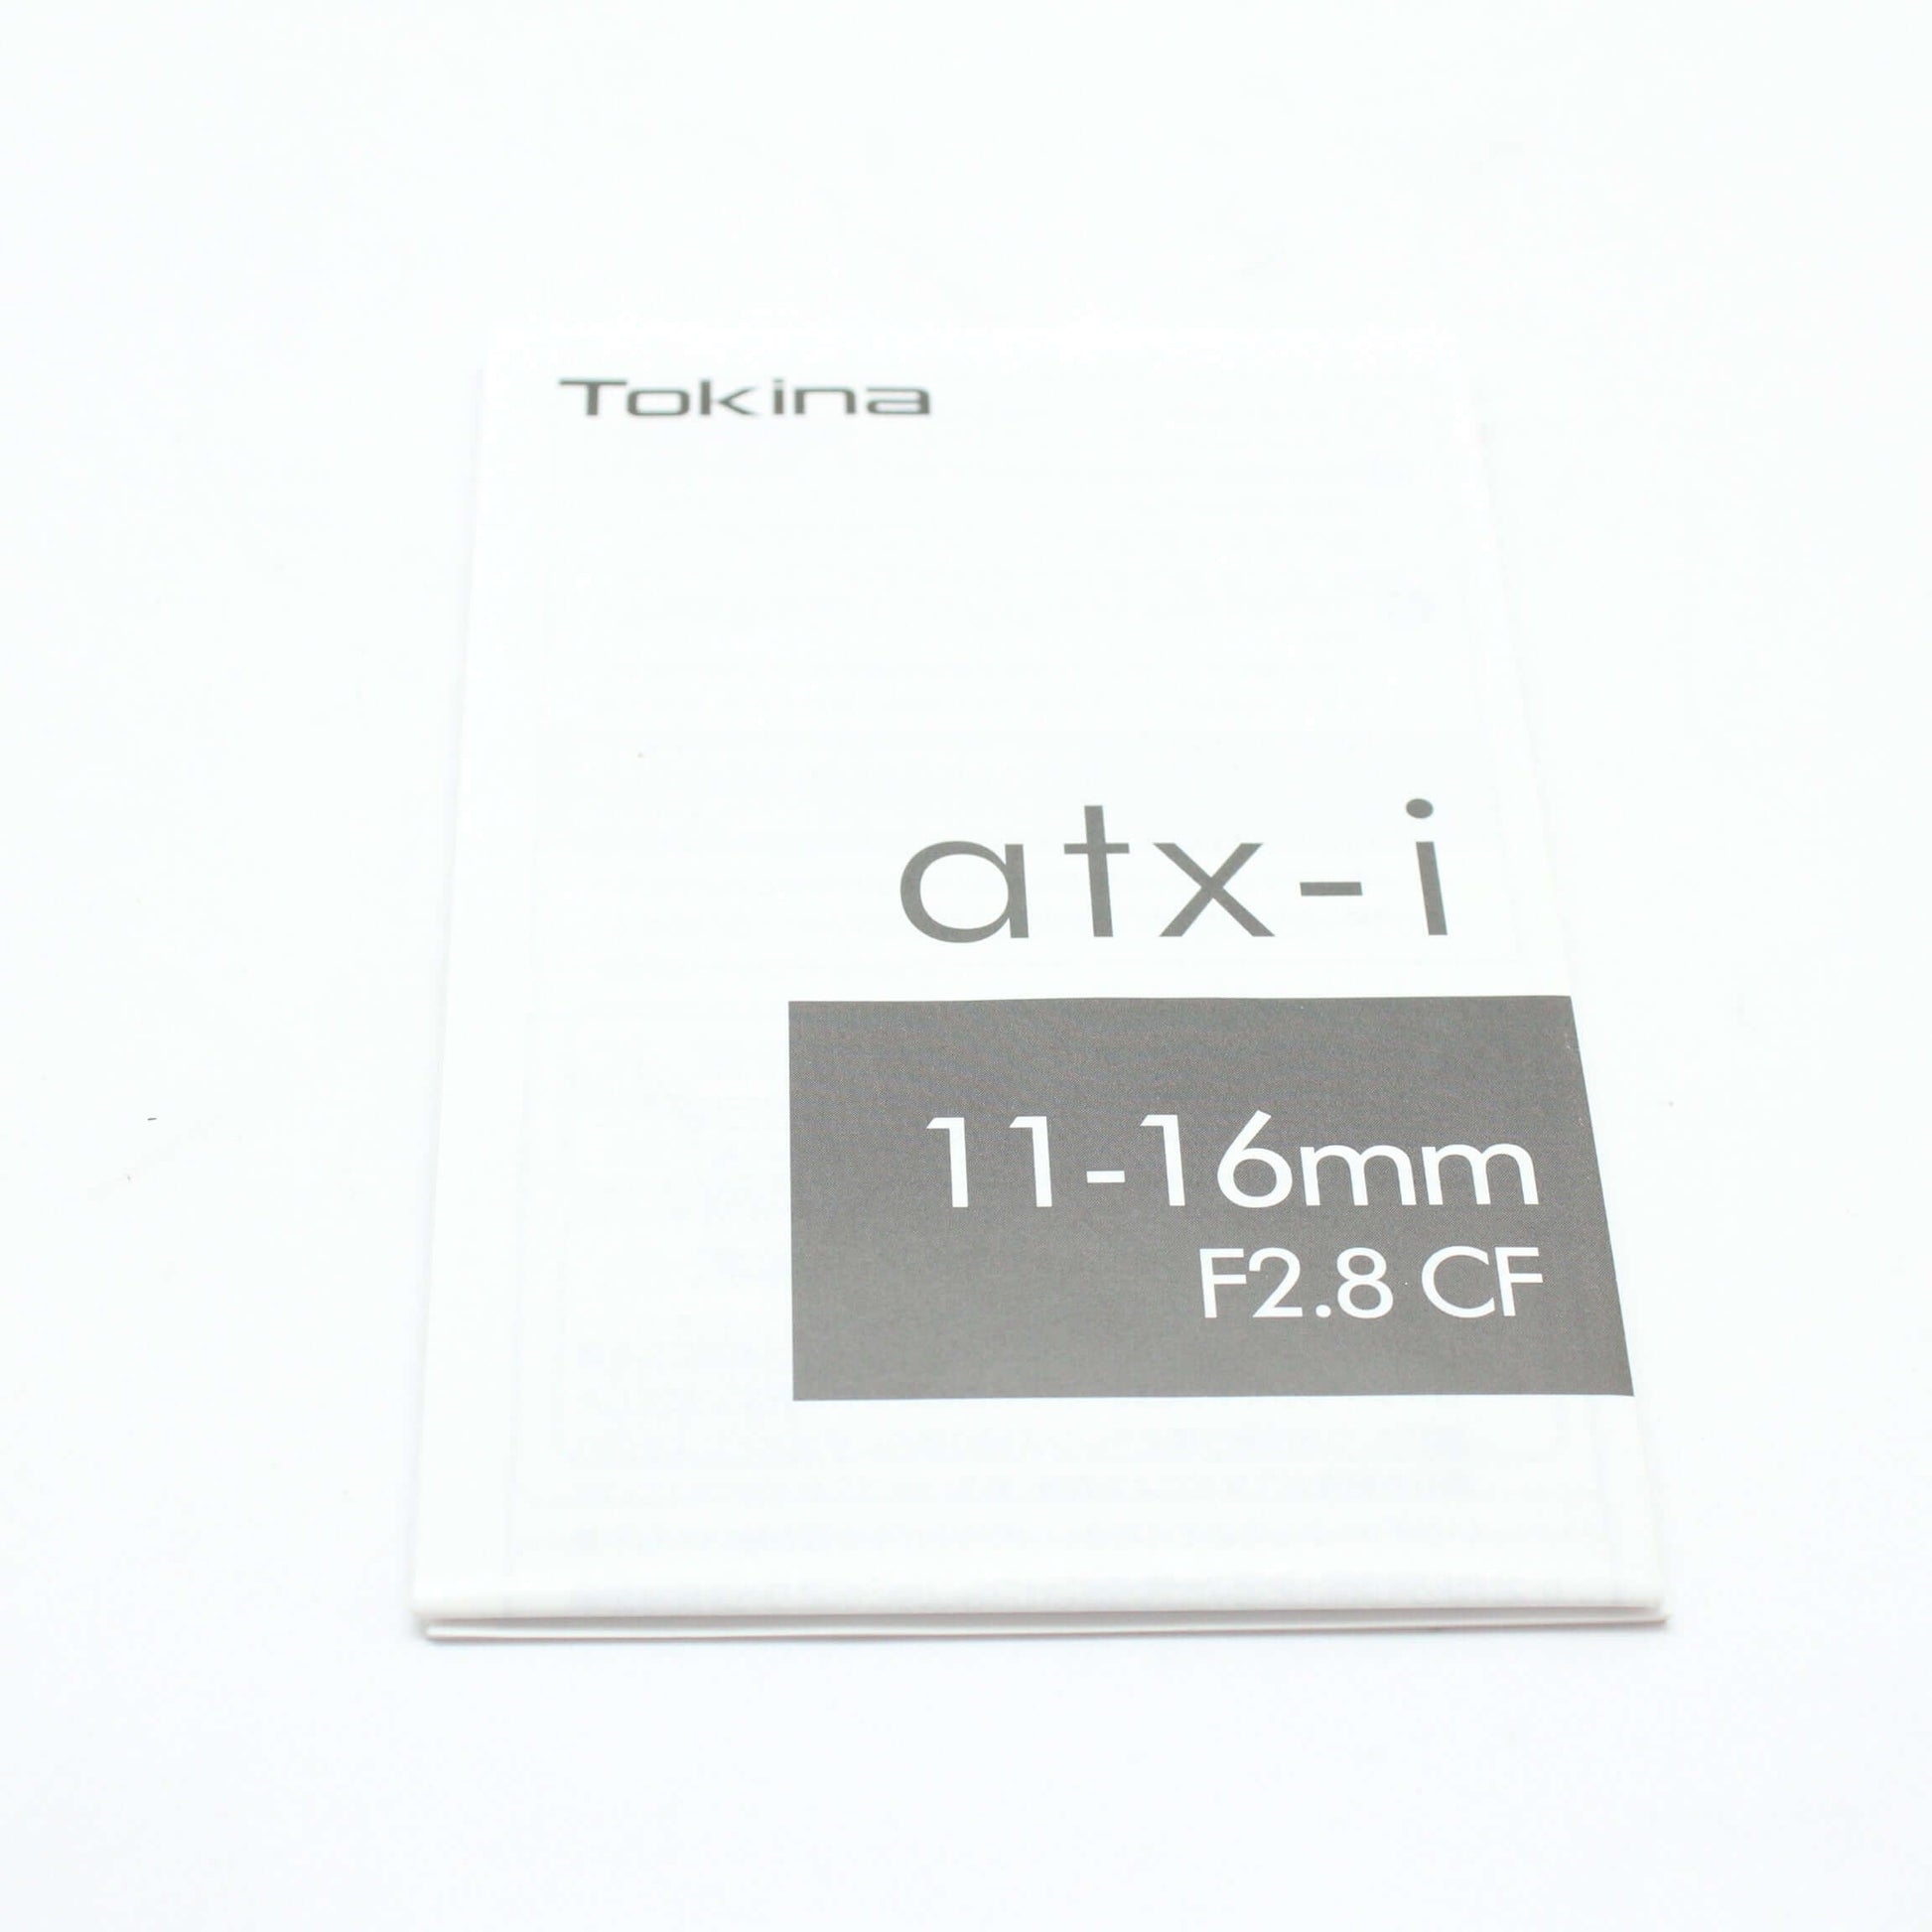 中古品 Tokina atx-i 11-16mm F2.8 CF Canon用【4月13日(土) youtube生配信でご紹介】